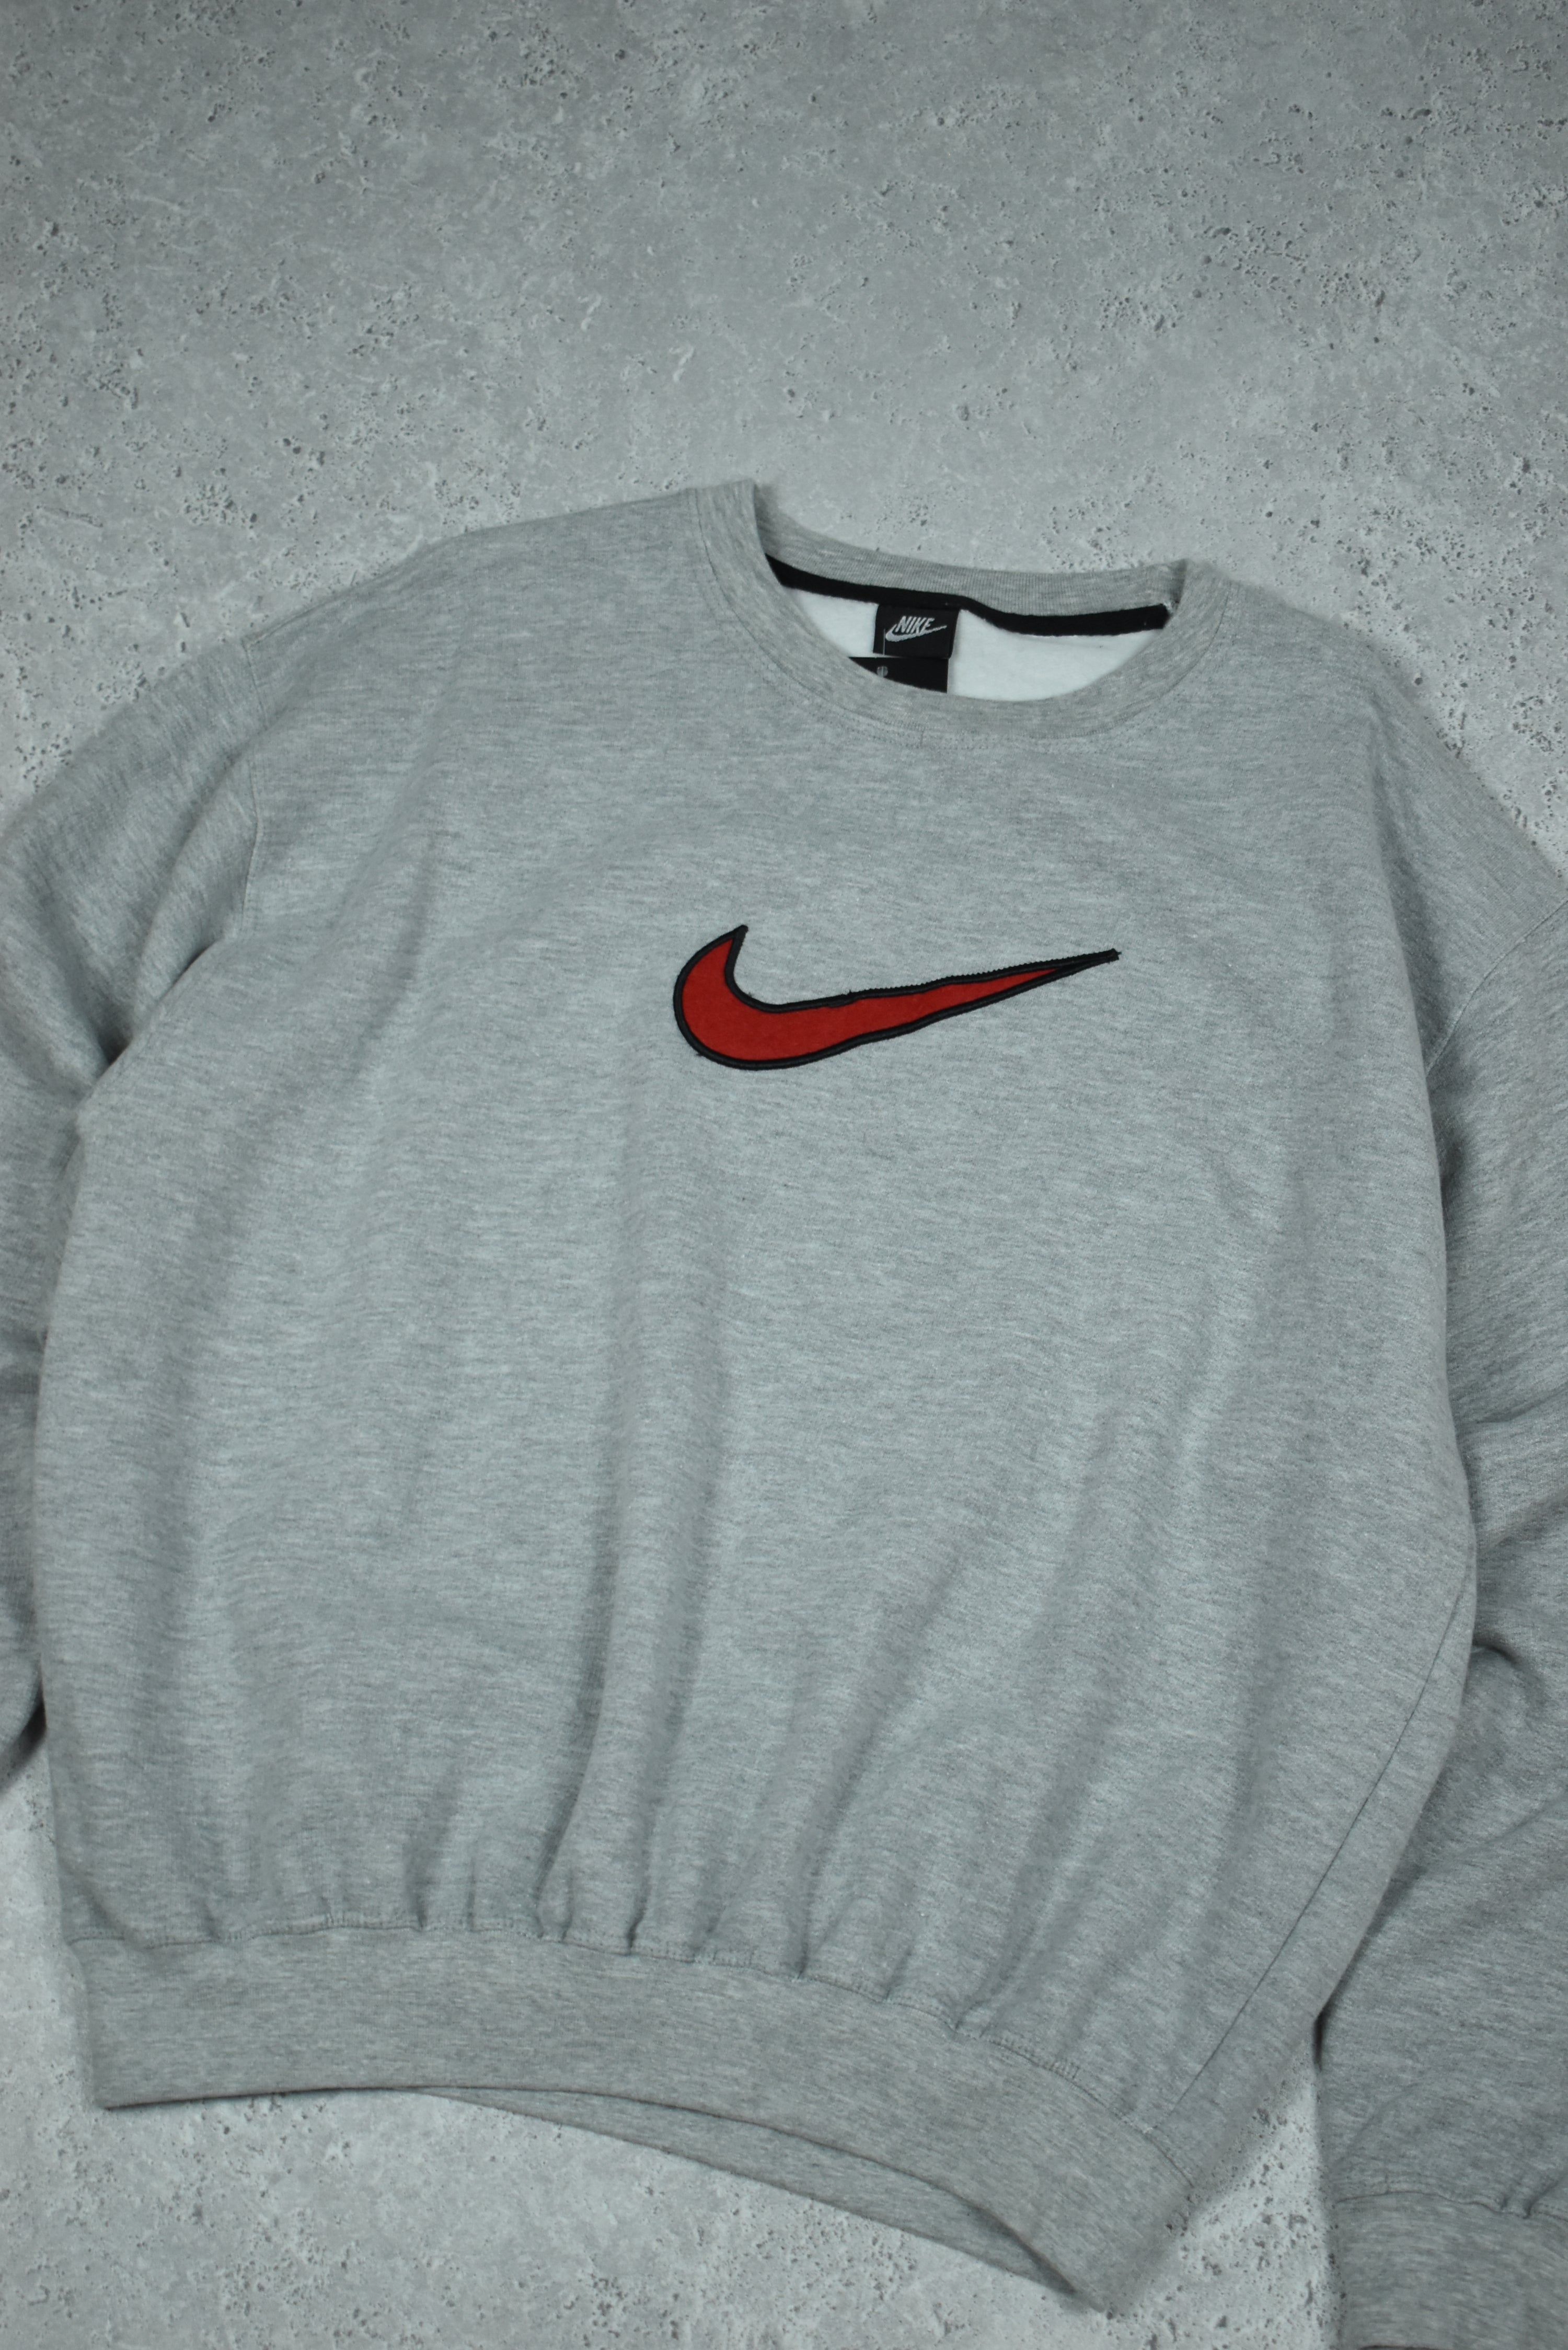 Vintage Nike Embroidery Swoosh Sweatshirt Medium